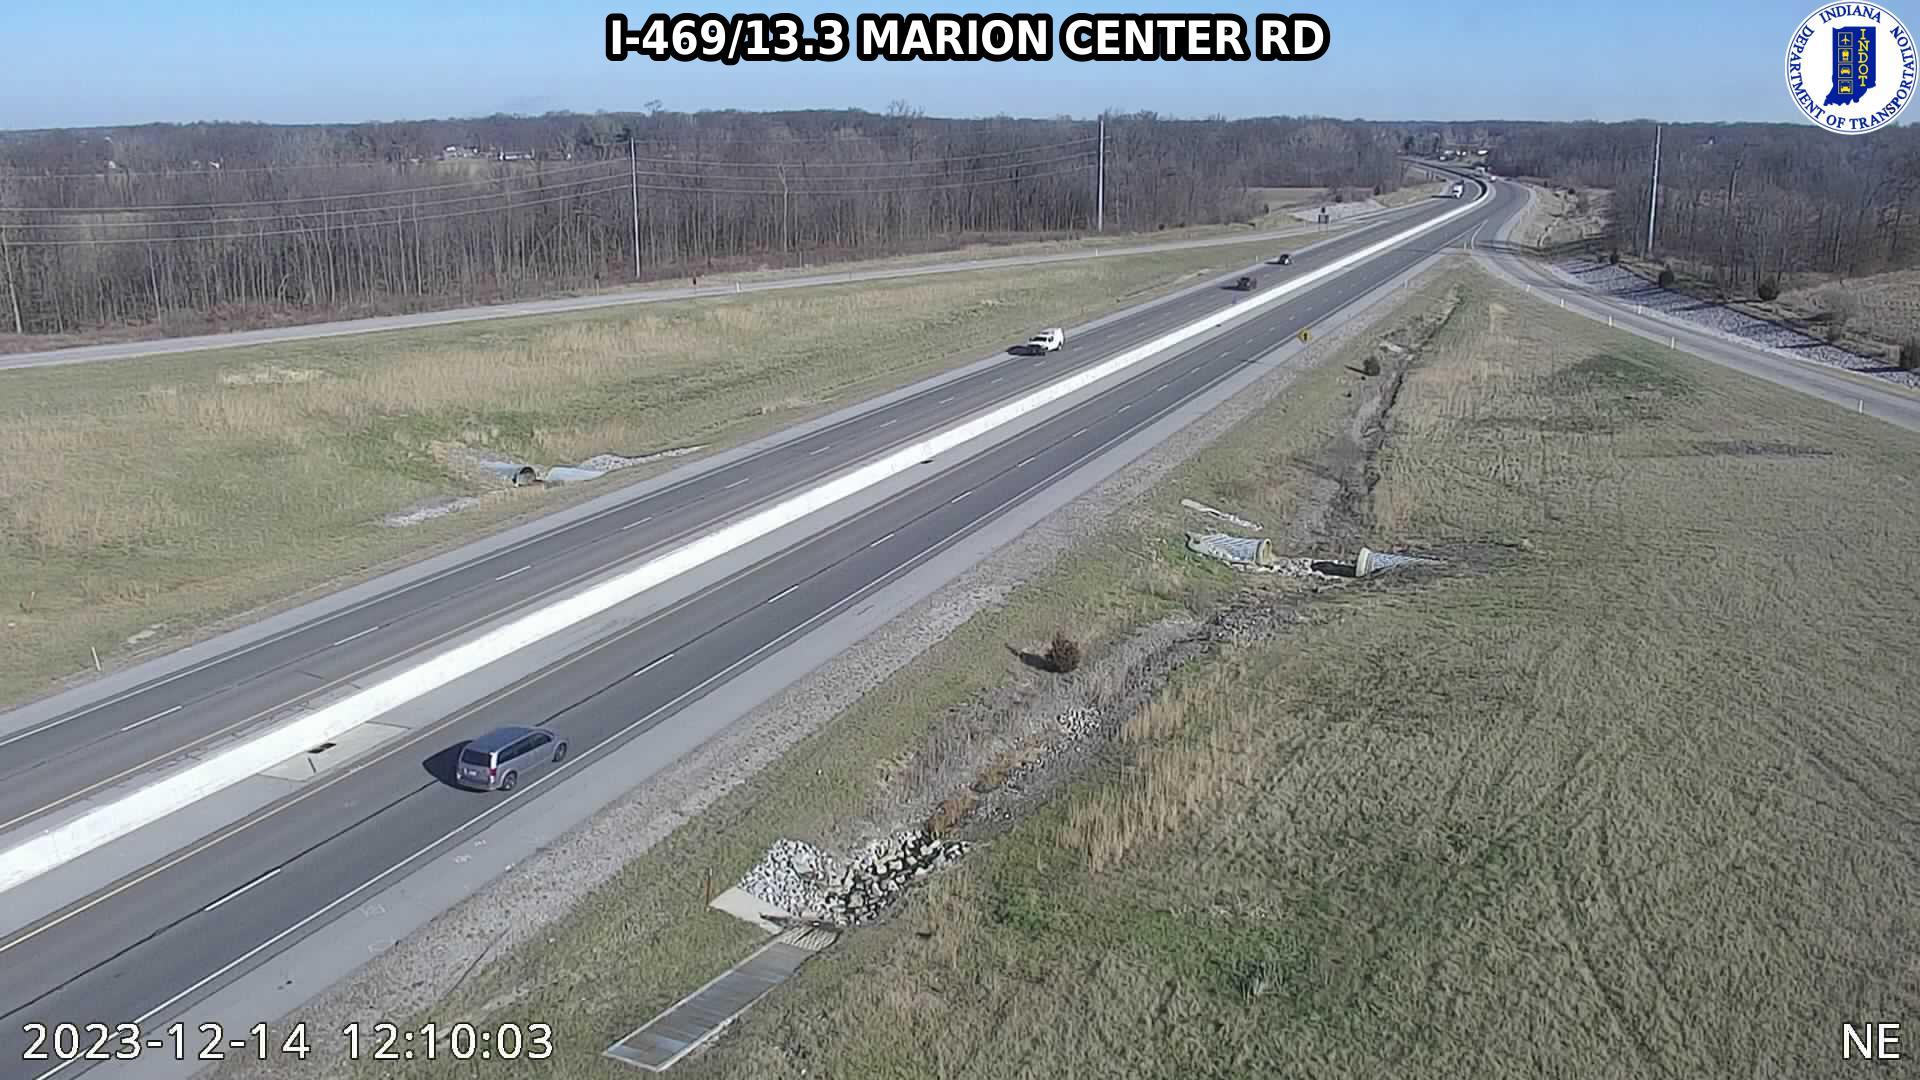 Hessen Cassel: I-469: I-469/13.3 MARION CENTER RD Traffic Camera